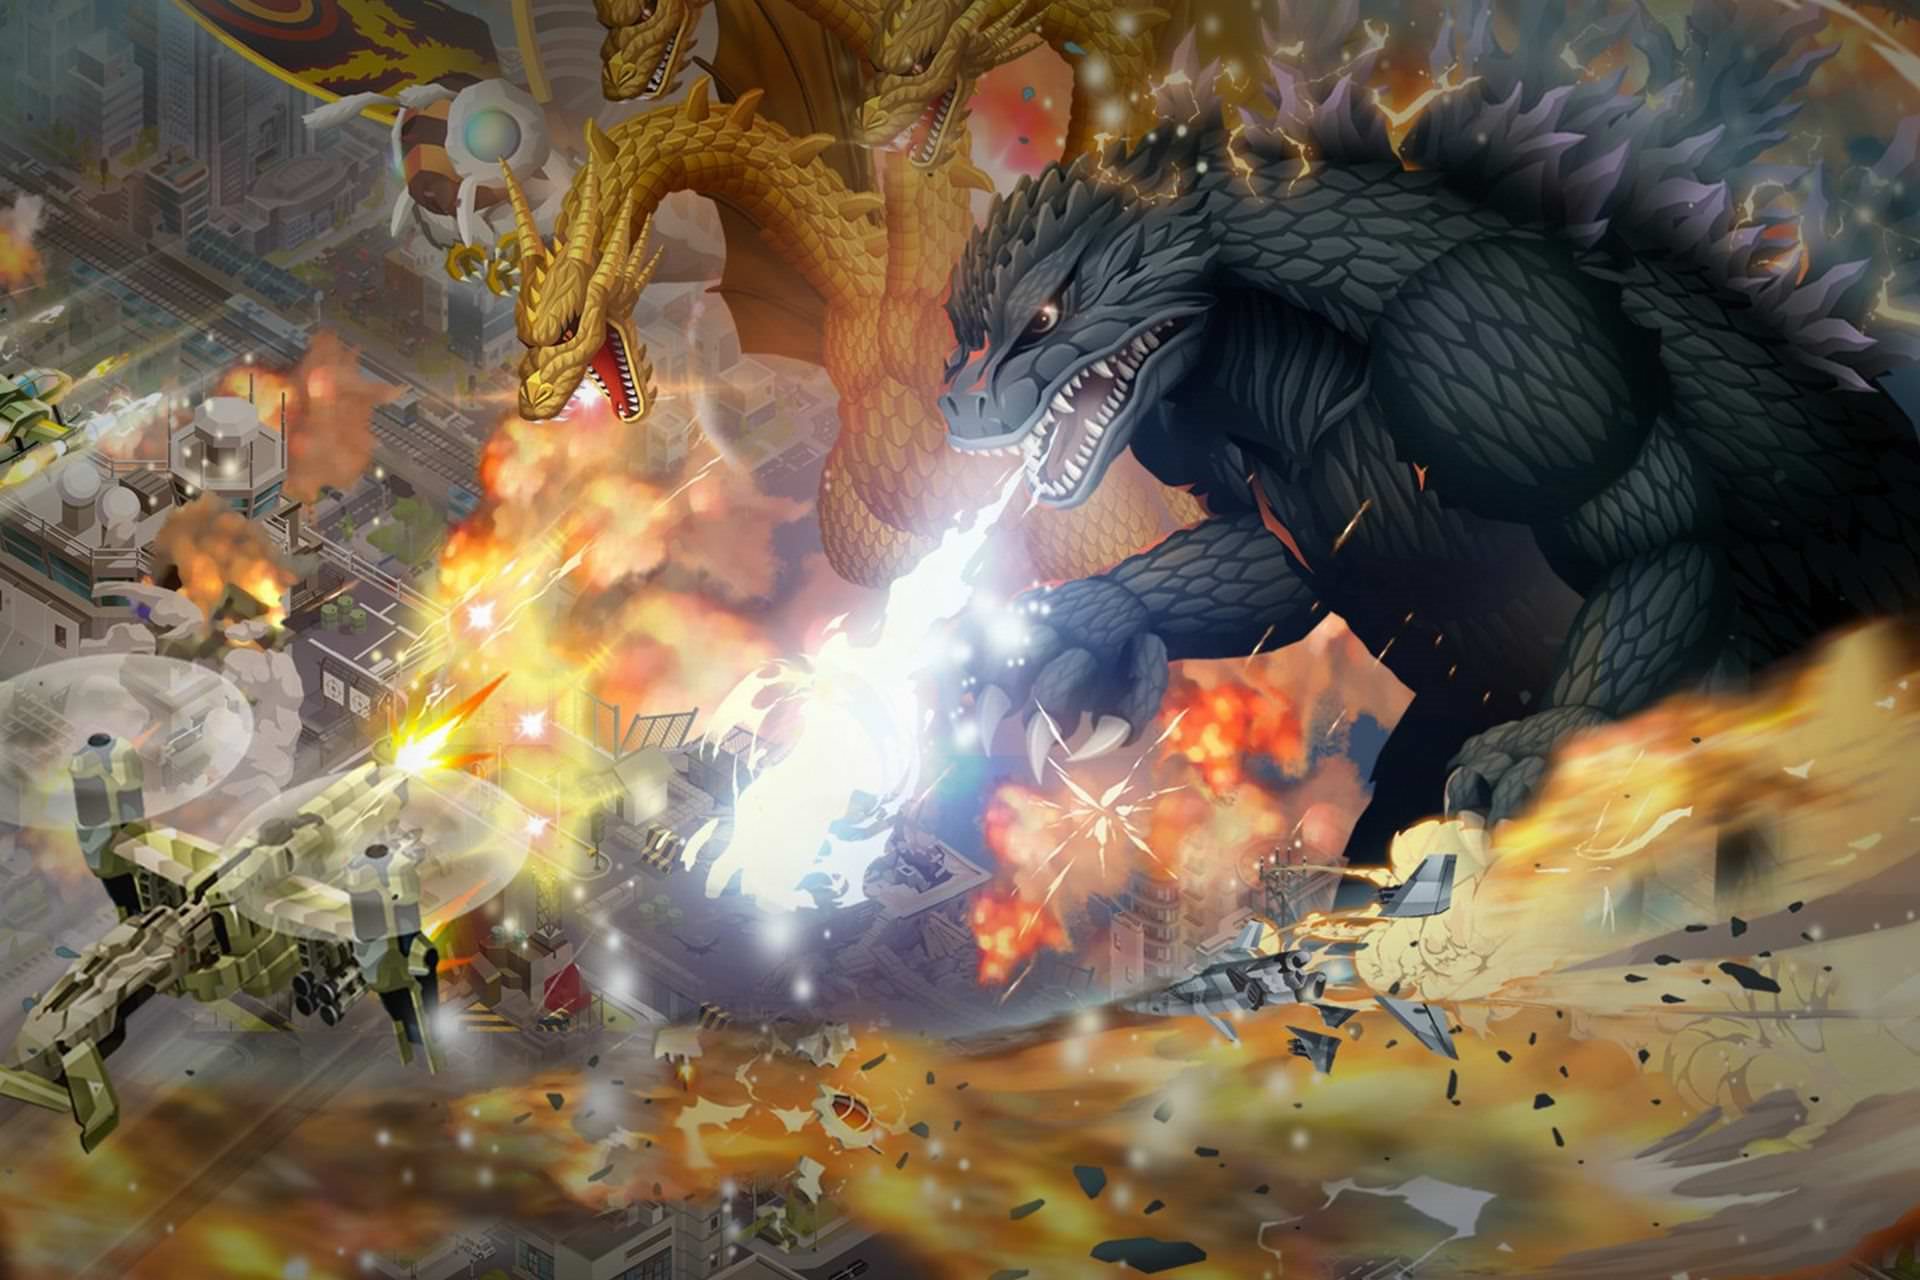 بازی موبایل Godzilla Defense Force طرفداران گودزیلا را به مبارزه با کایاک های کلاسیک دعوت می کند. منتظر بررسی ما باشید.